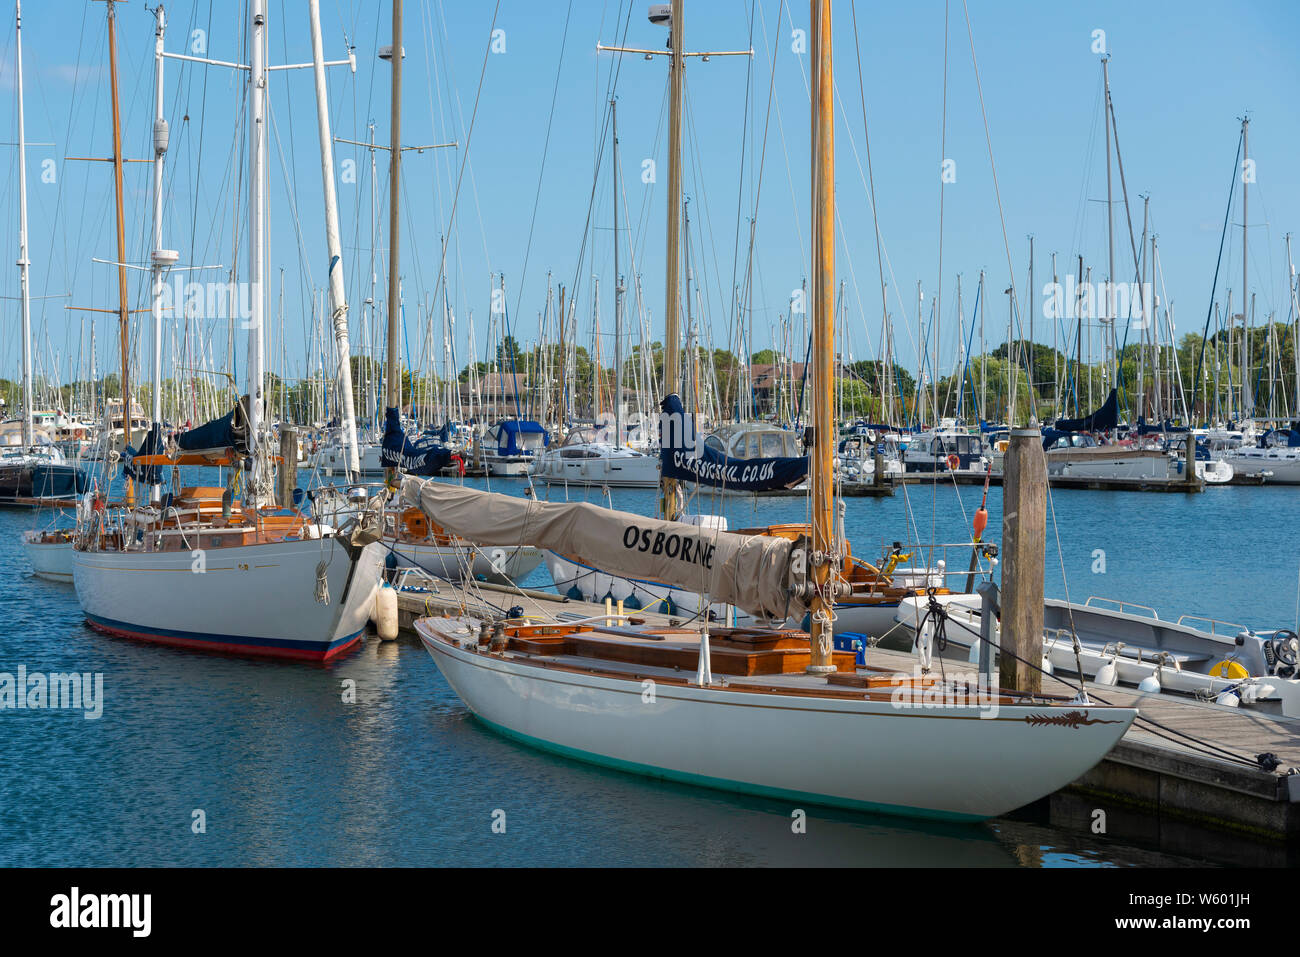 Traditionelle oder klassische Holz- segeln Boote in der Premier Marinas - Chichester Marina, Chichester Harbour, West Sussex, England, Großbritannien Stockfoto